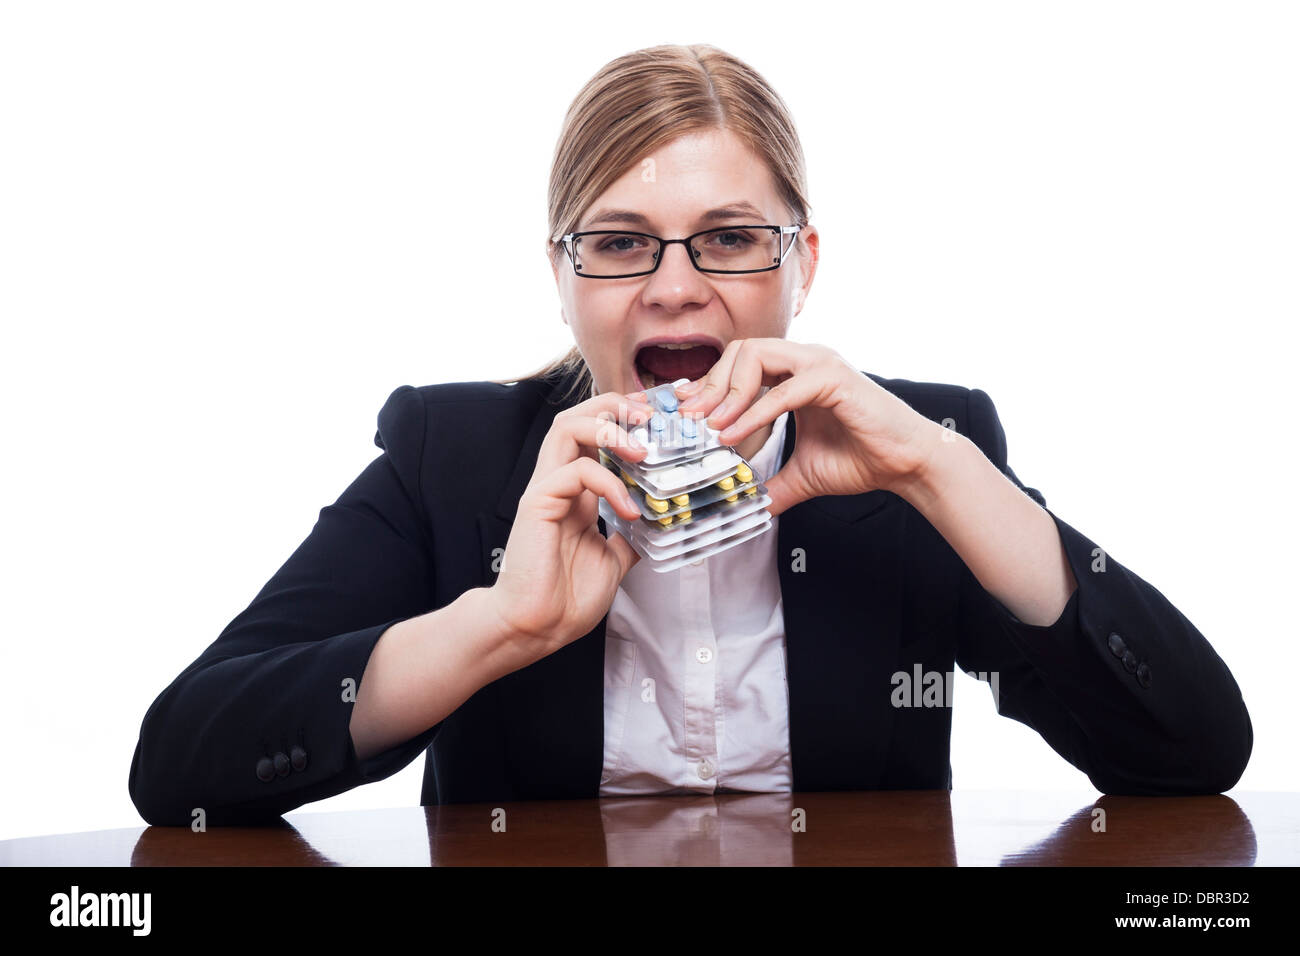 Frau gonna eat Pharma, Übernutzung Pillen Konzept, isoliert auf weißem Hintergrund. Stockfoto